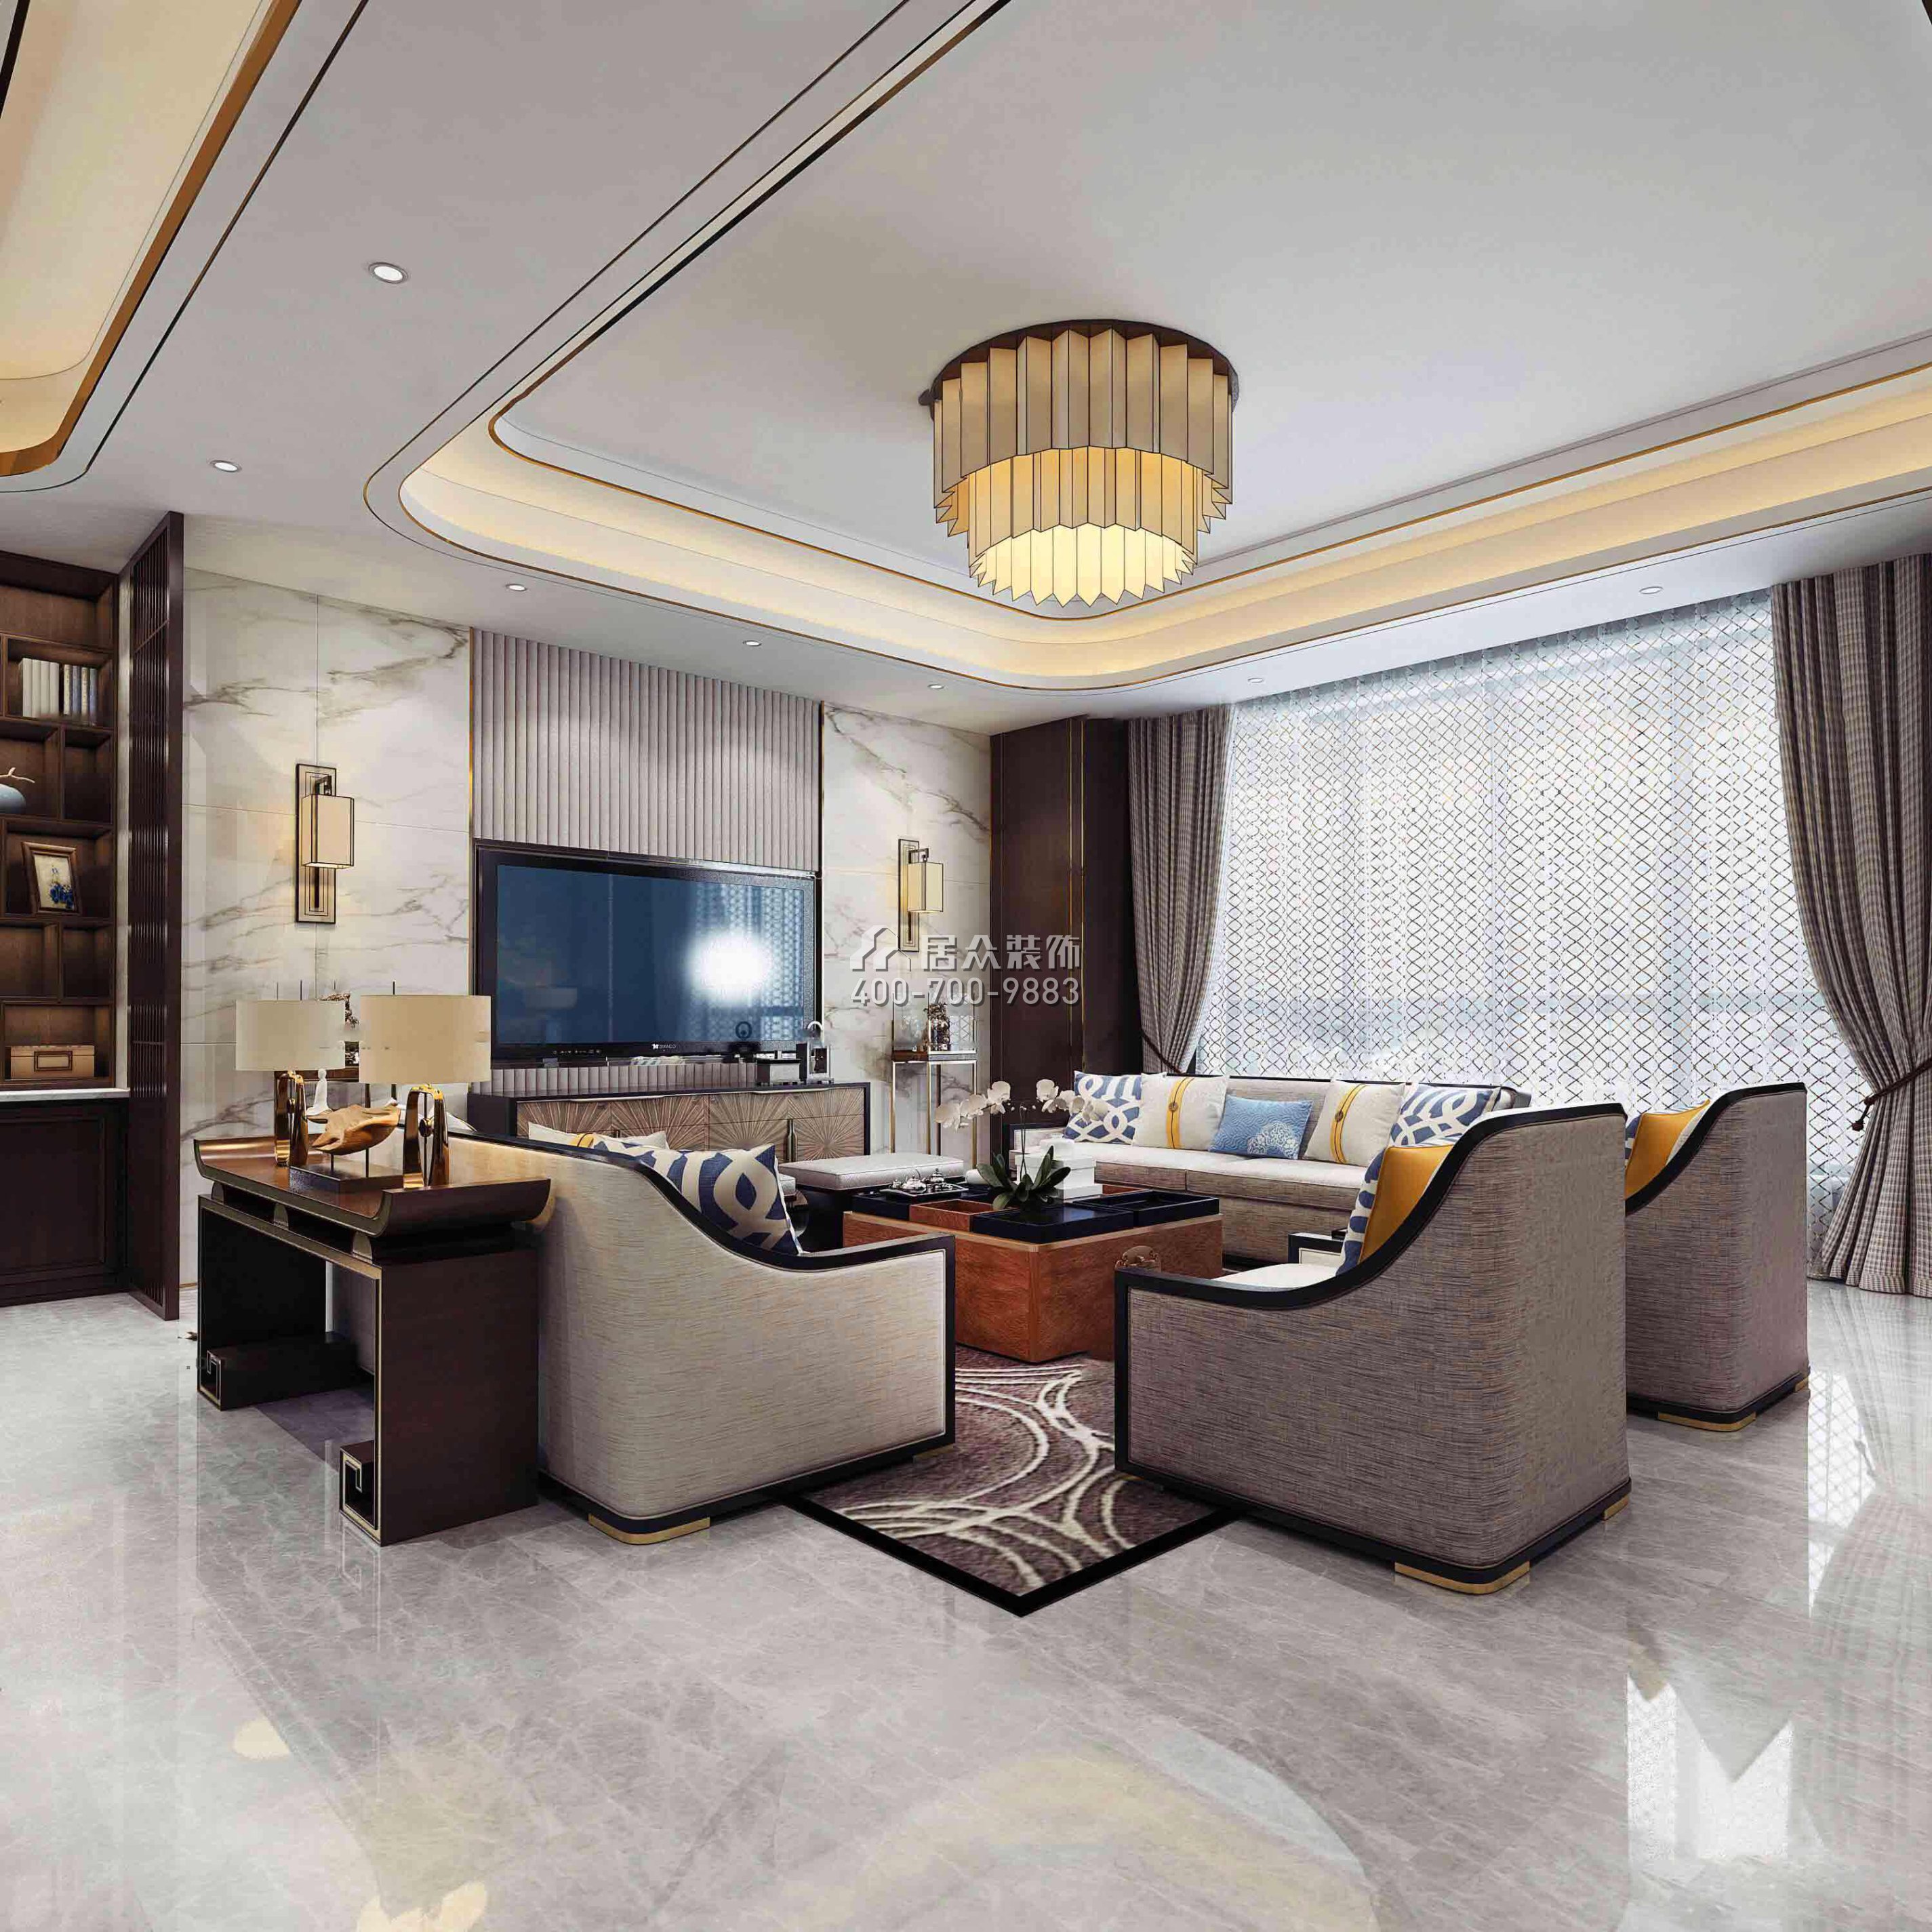 华发新城226平方米中式风格平层户型客厅装修效果图